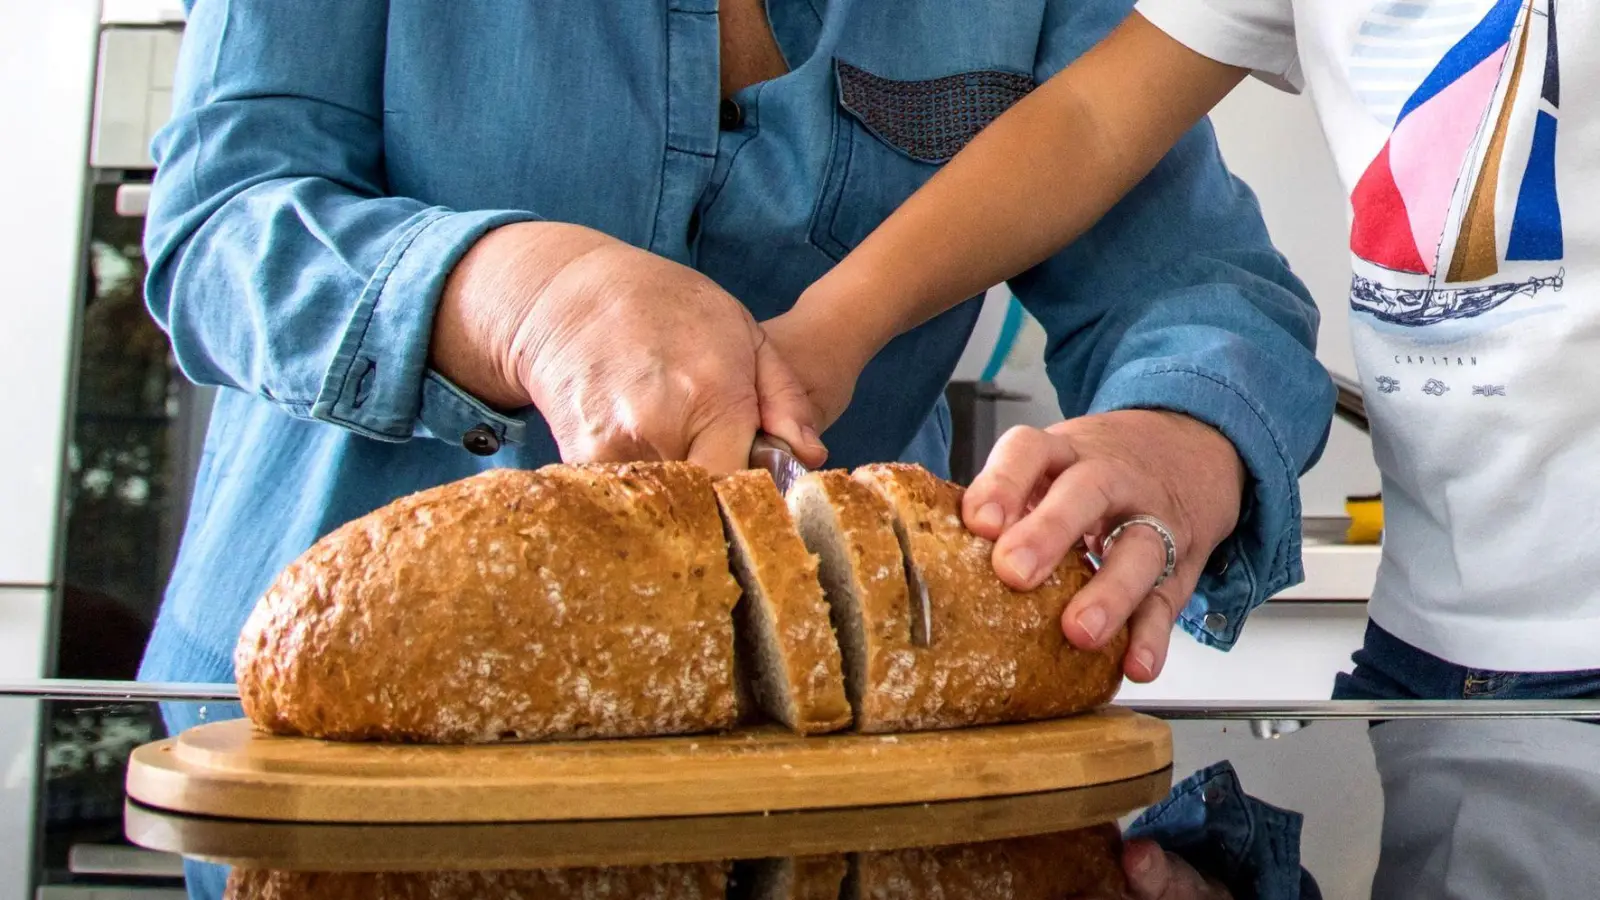 Täglich frisches Brot für die ganze Familie wird mit einem Brotbackautomaten zum Kinderspiel. (Foto: Christin Klose/dpa-tmn)